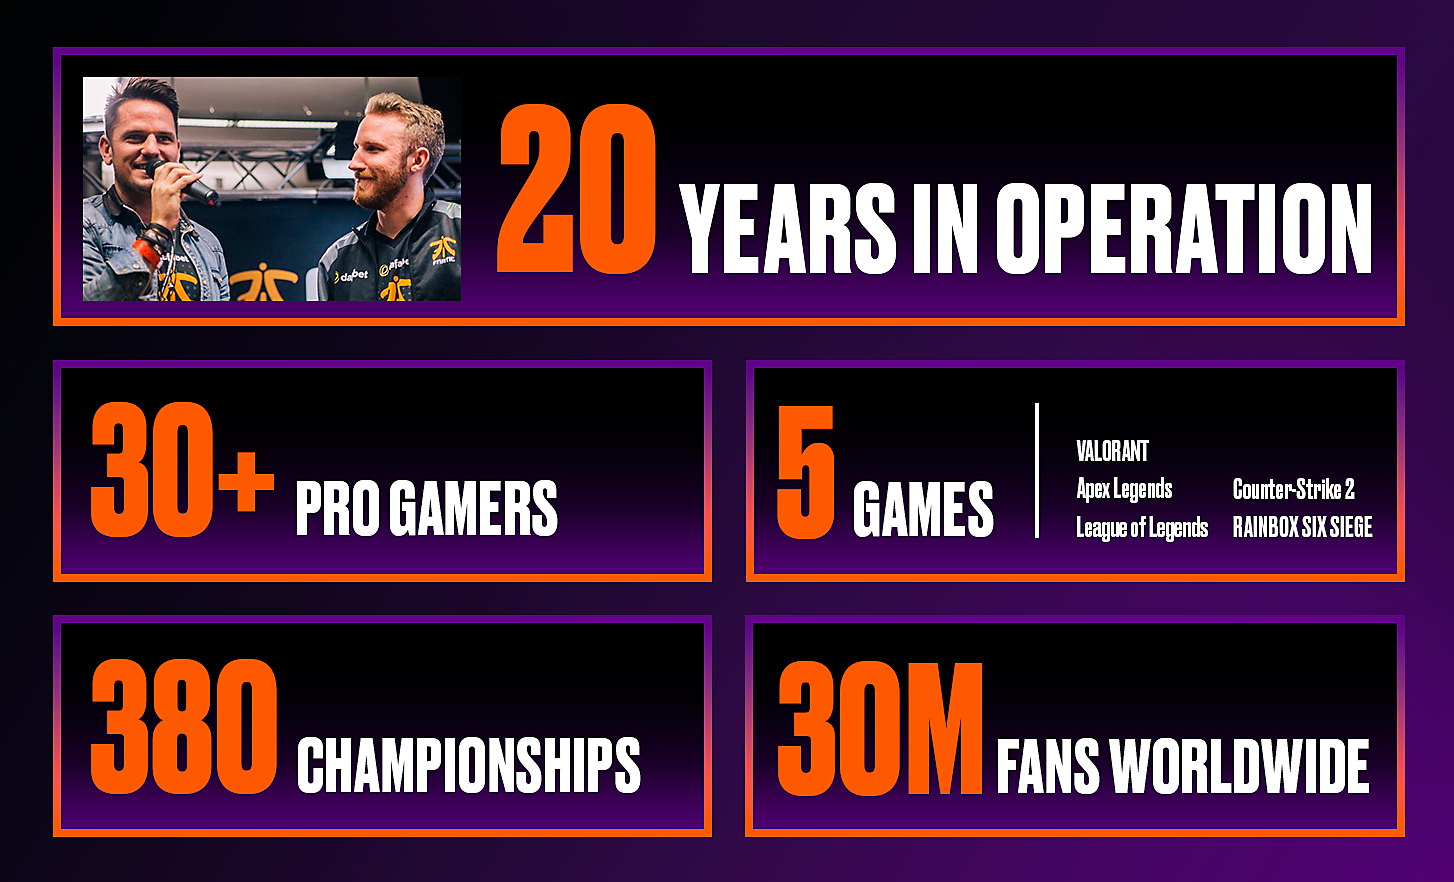 5 cuadros muestran varias estadísticas de Fnatic, incluidos los años de actividad y el número de jugadores profesionales, juegos, campeonatos y fans